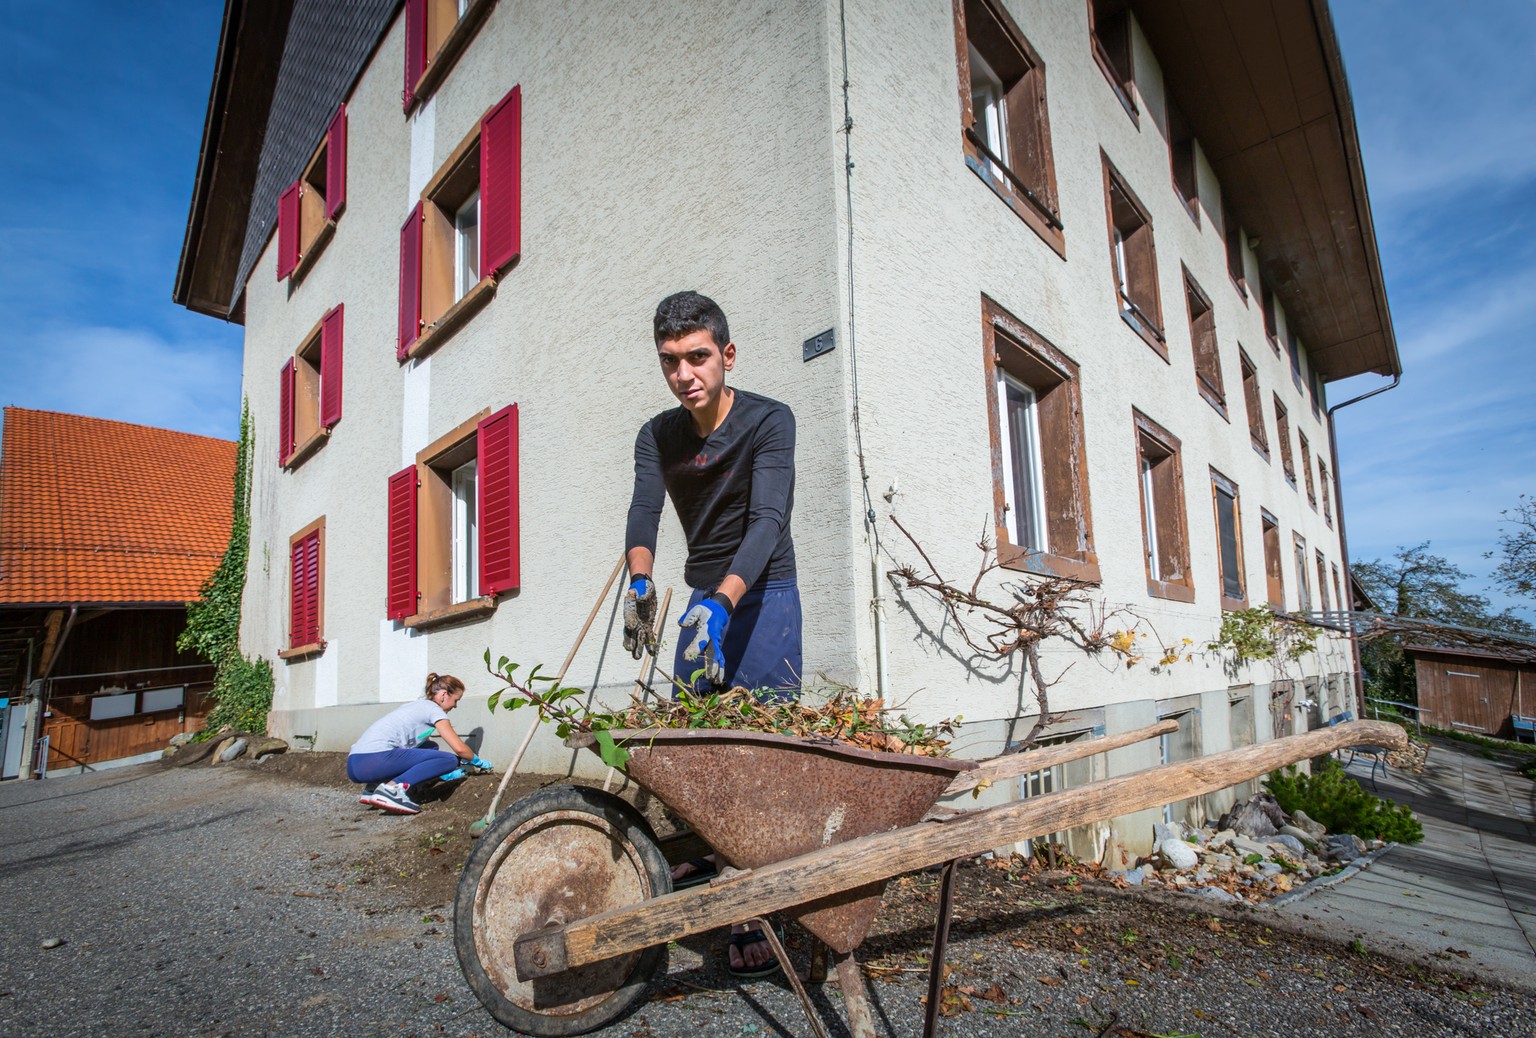 39 Plätze bietet die Asylunterkunft in Beinwil, 37 sind bereits belegt – zwei Asylsuchende bei der Gartenarbeit vor dem «Huus uf dr Weid».